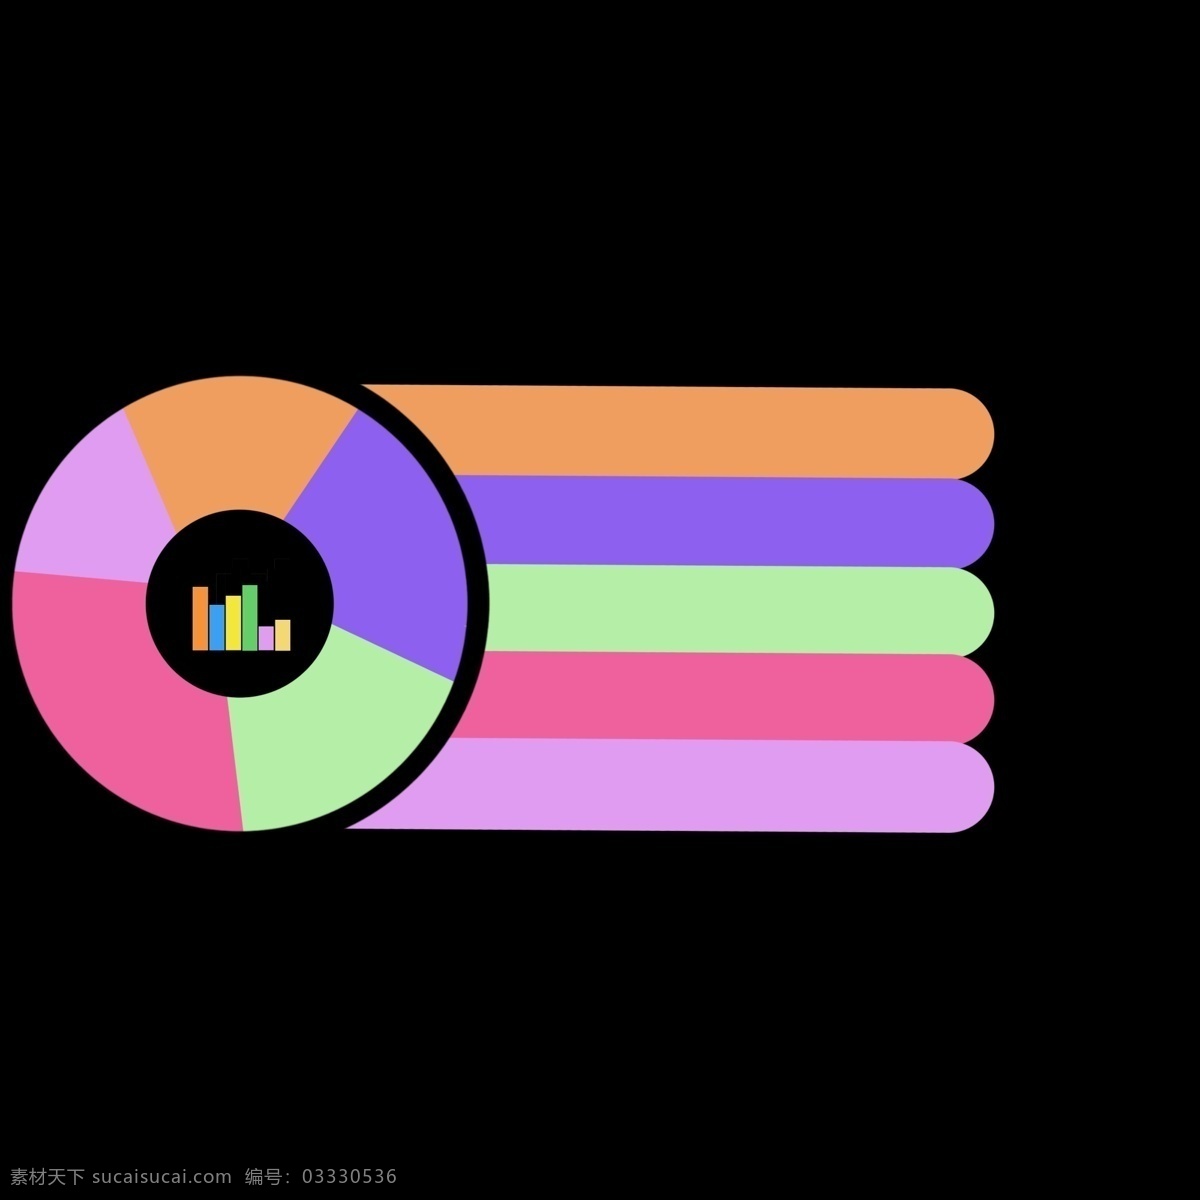 彩色 统计 图表 数据分析 免 抠 图 彩色统计图 数据统计 汇总分析 分析比较 用户分析 公司ppt 数据分类